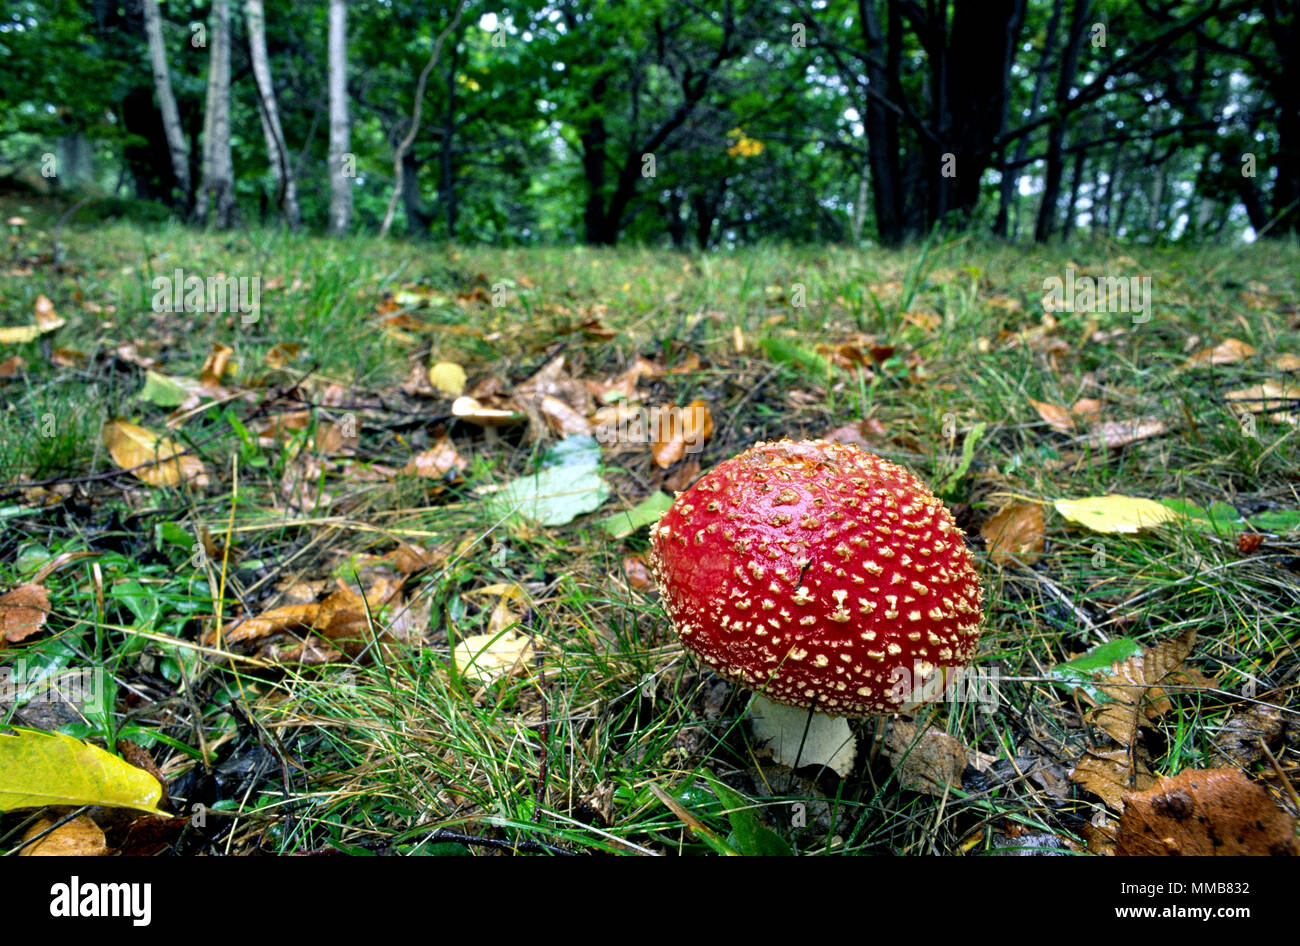 Amanita muscaria im Wald im Herbst. Garessio Mindino, Gemeinde, Provinz Cuneo, Piemont, Norditalien. Stockfoto